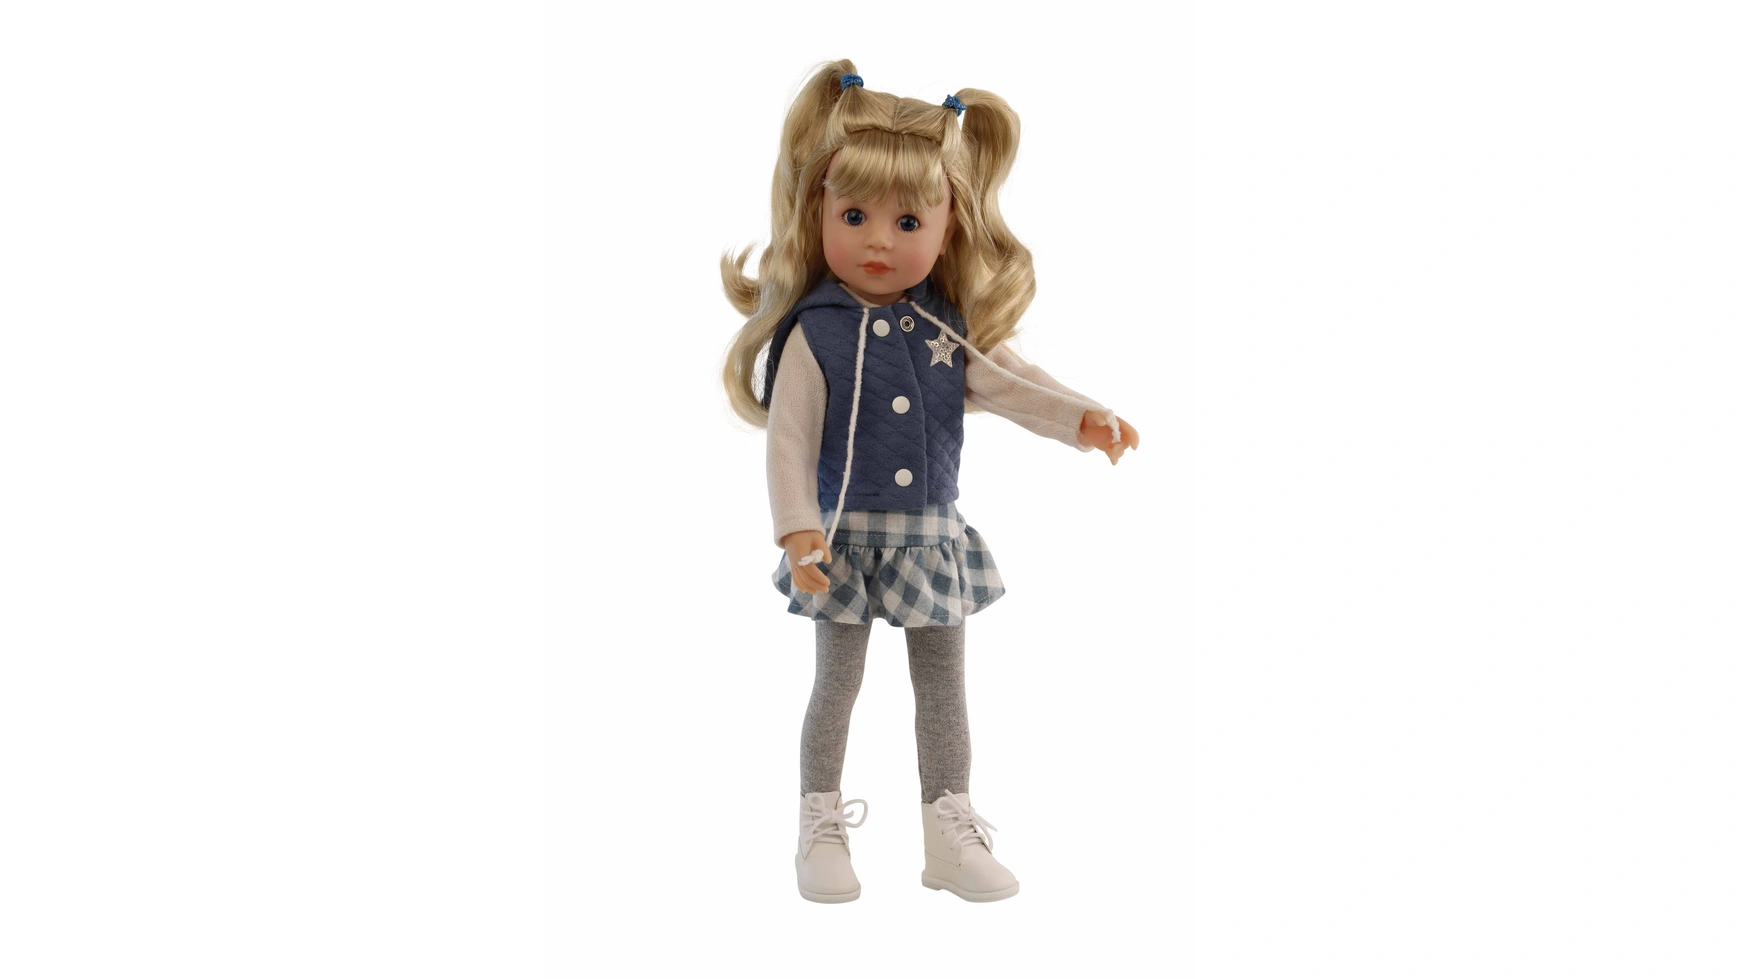 Schildkroet-Puppen Стоячая Кукла Йелла 46 см светлые волосы, спортивная одежда де ламбийи и я люблю музыку